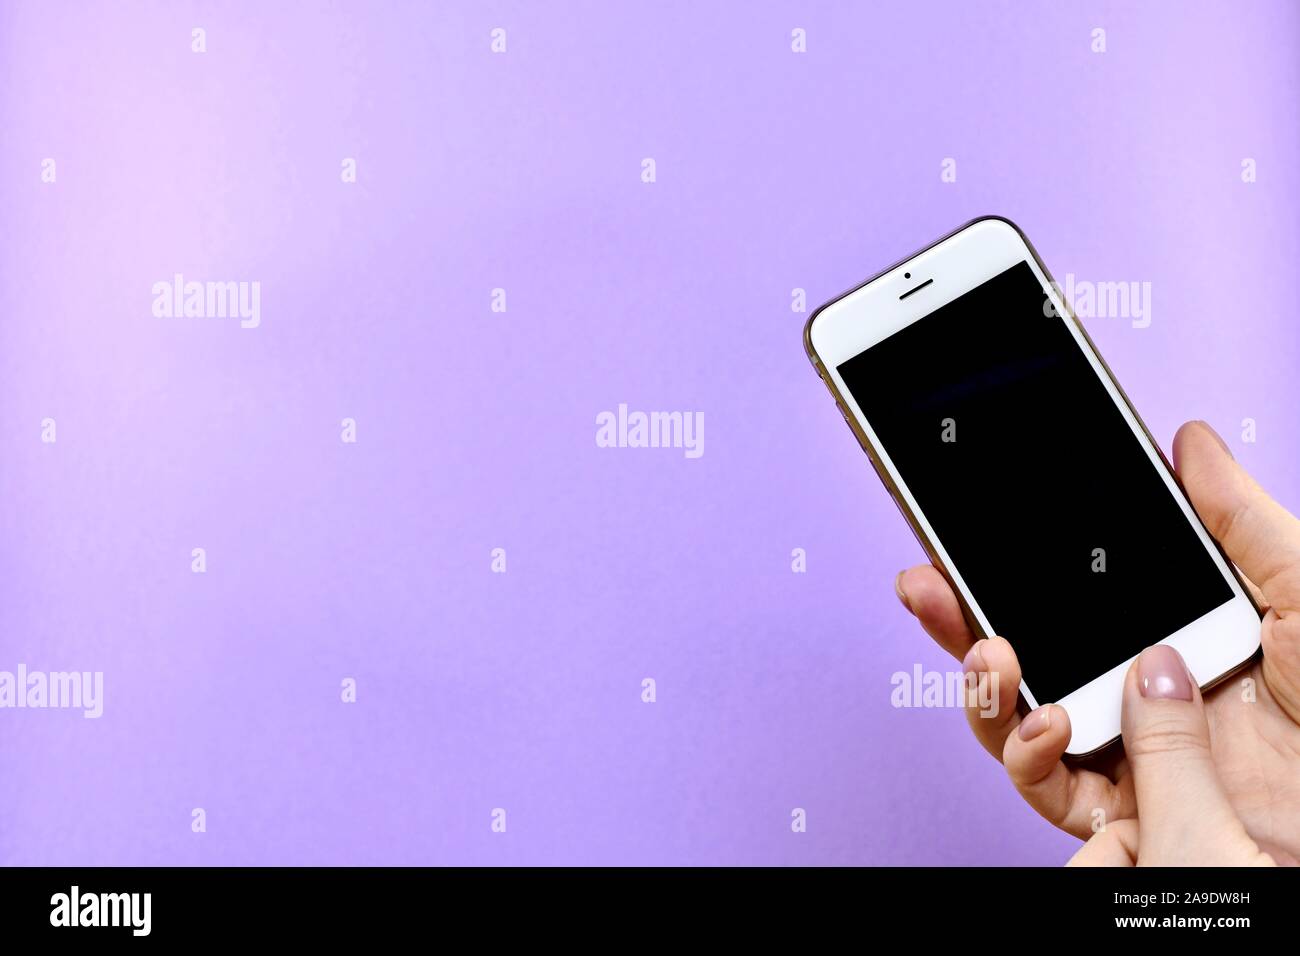 Ein Smartphone mit einem schwarzen Bildschirm ausgeschaltet in der Hand, eine Taste mit dem Daumen gedrückt wird, hinterlässt. Stockfoto